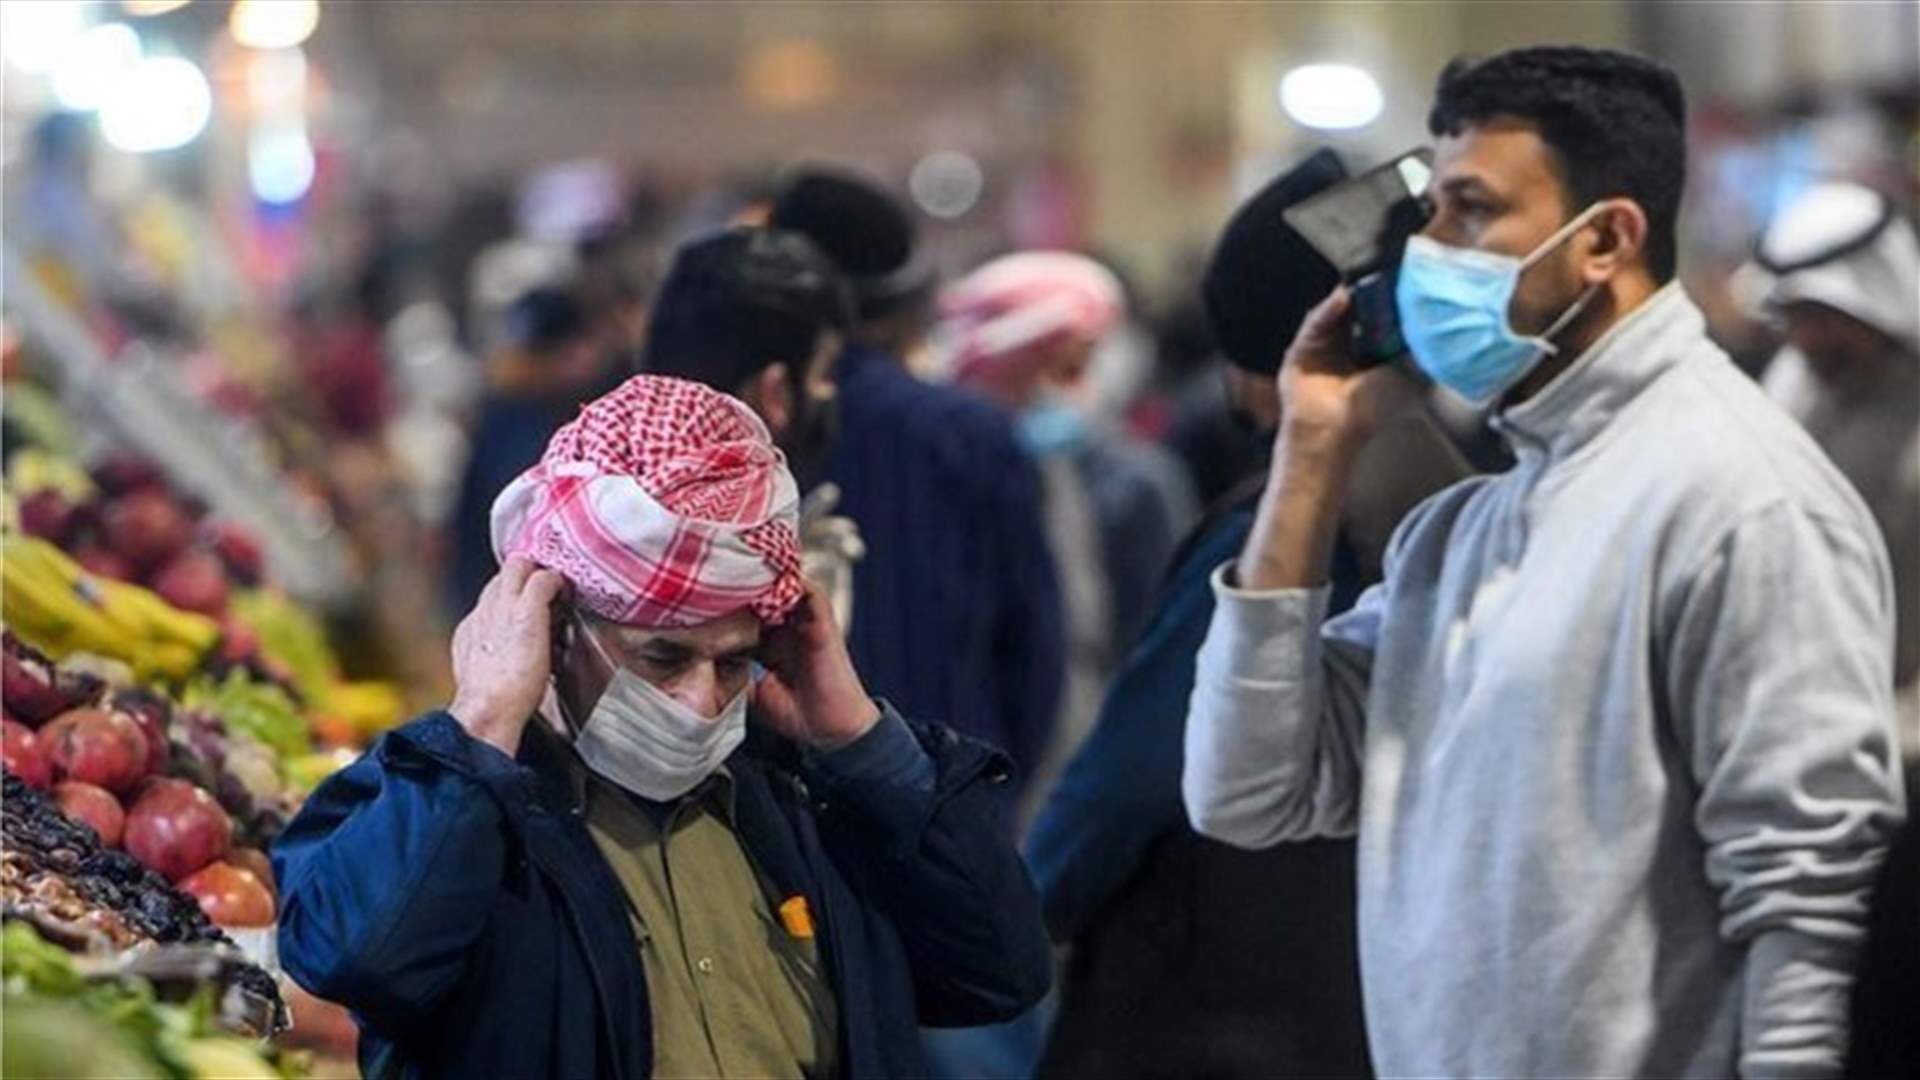 السعودية تفرض حظر تجول على مدار اليوم في الرياض ومدن أخرى